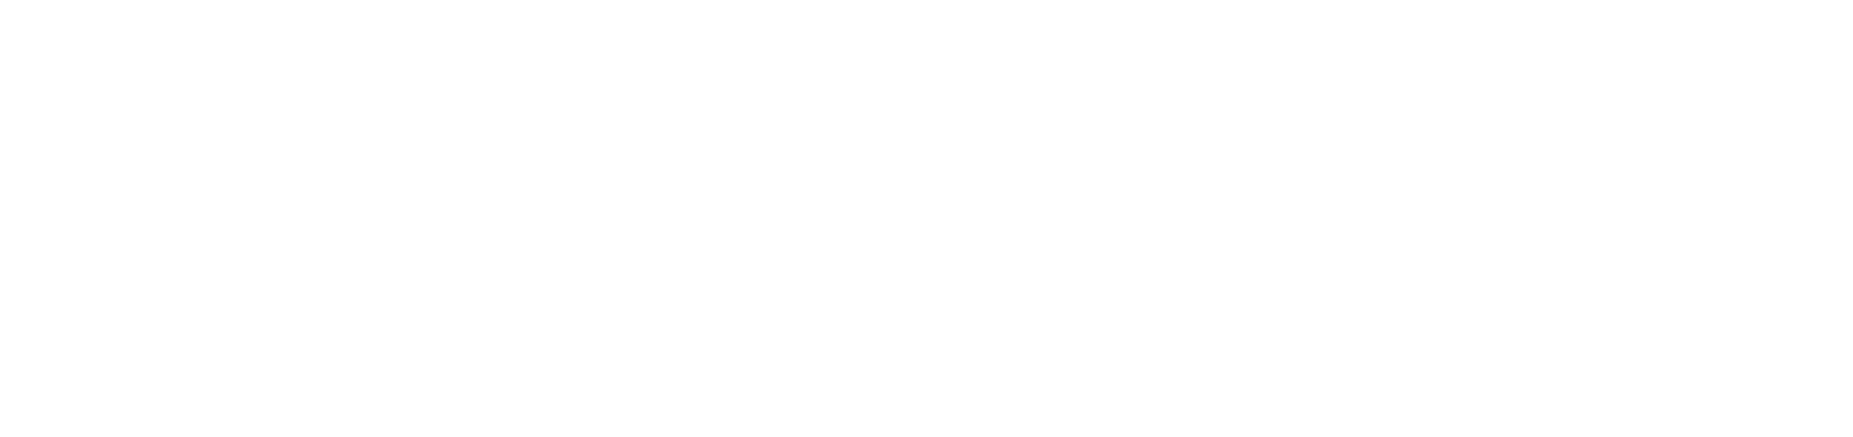 MM Colorado - White Transparent - For Web